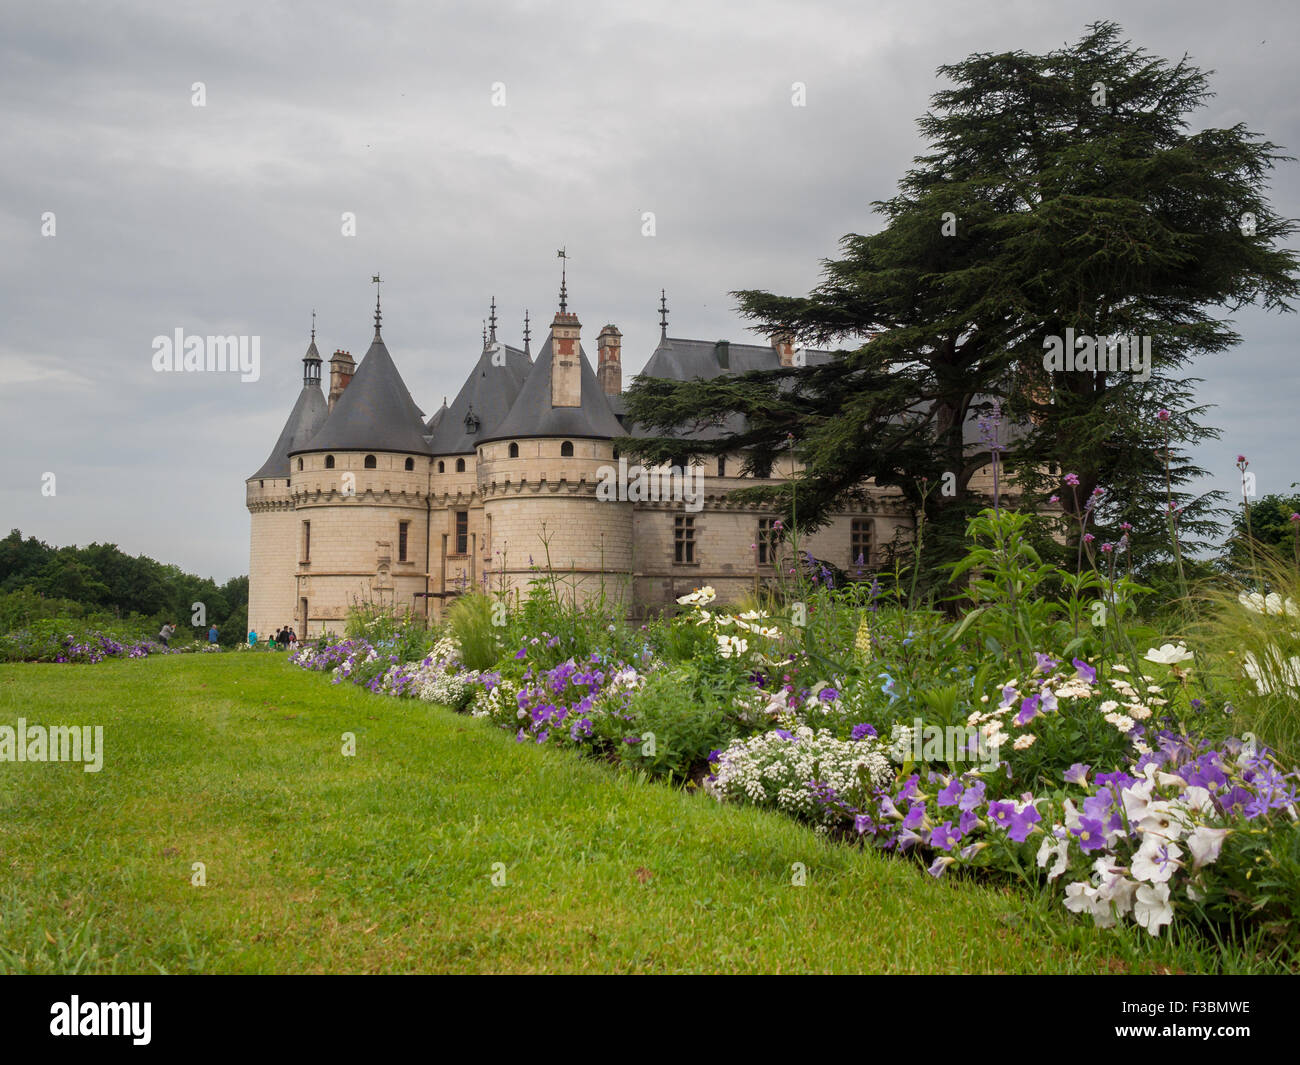 Chaumont-sur-Loire Chateau y jardín Foto de stock